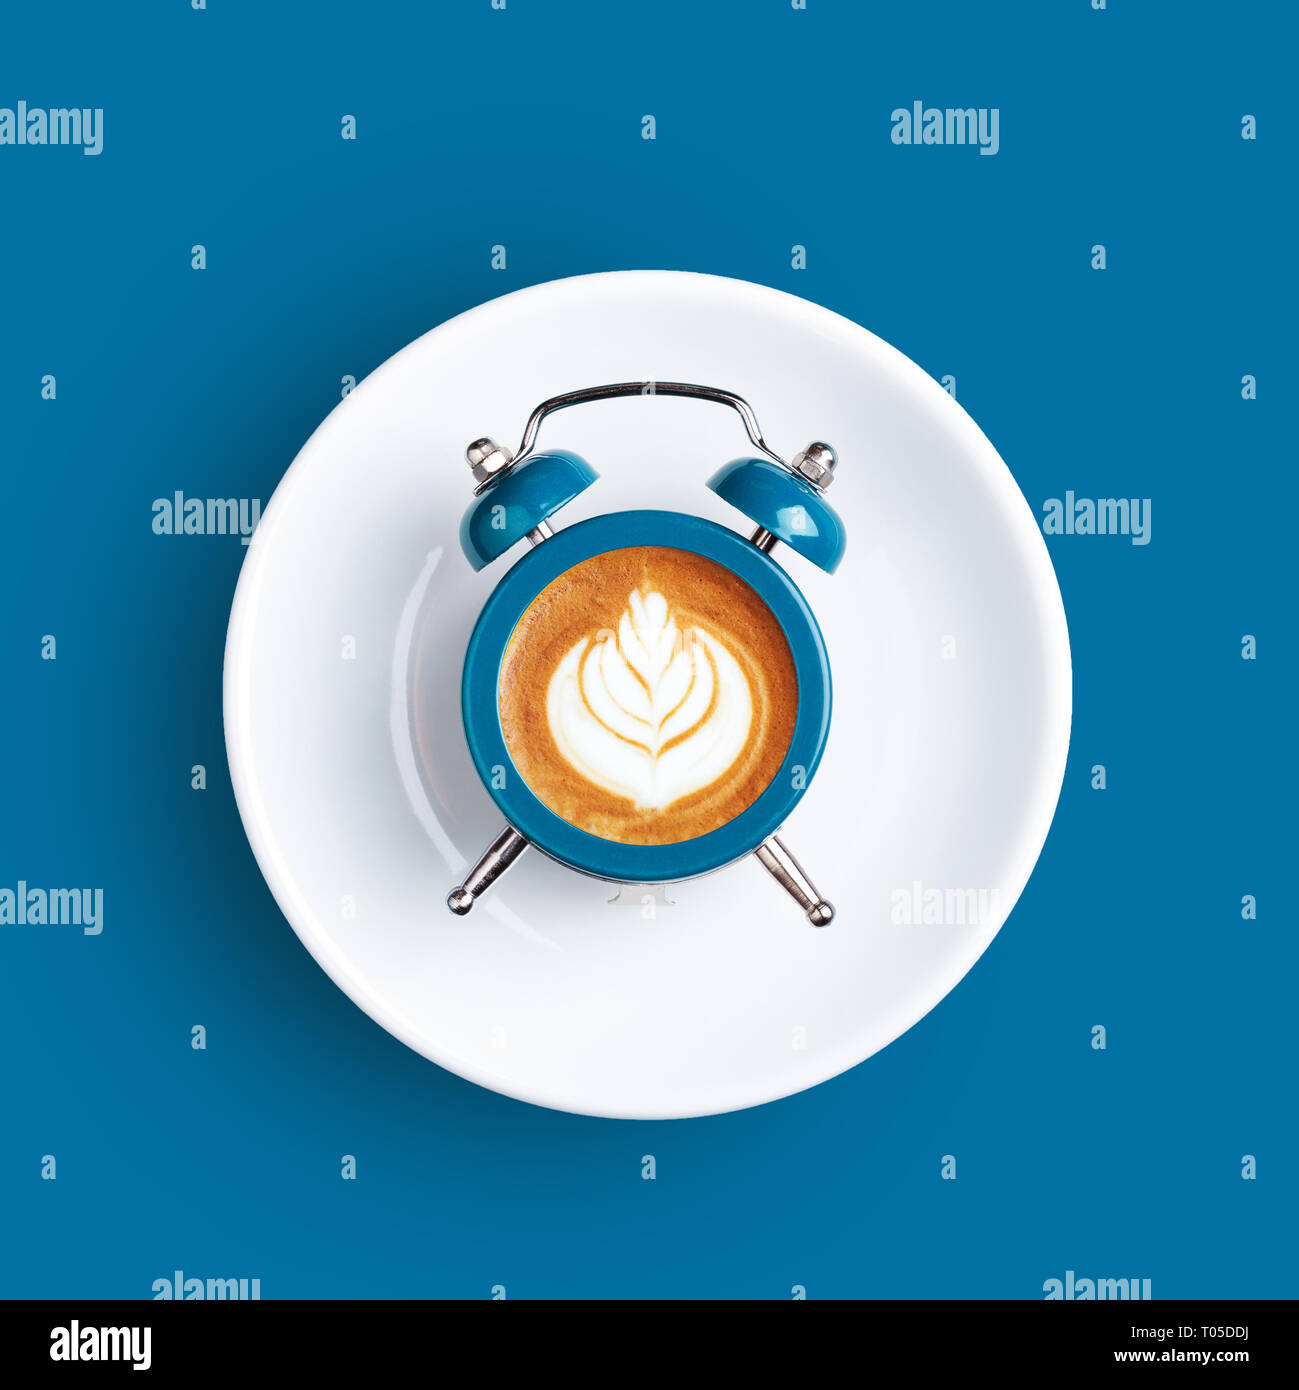 Wecker mit dem Zifferblatt mit Cappuccino auf blauem Hintergrund. Minimale gestylt kaffee zeit Konzept. Stockfoto